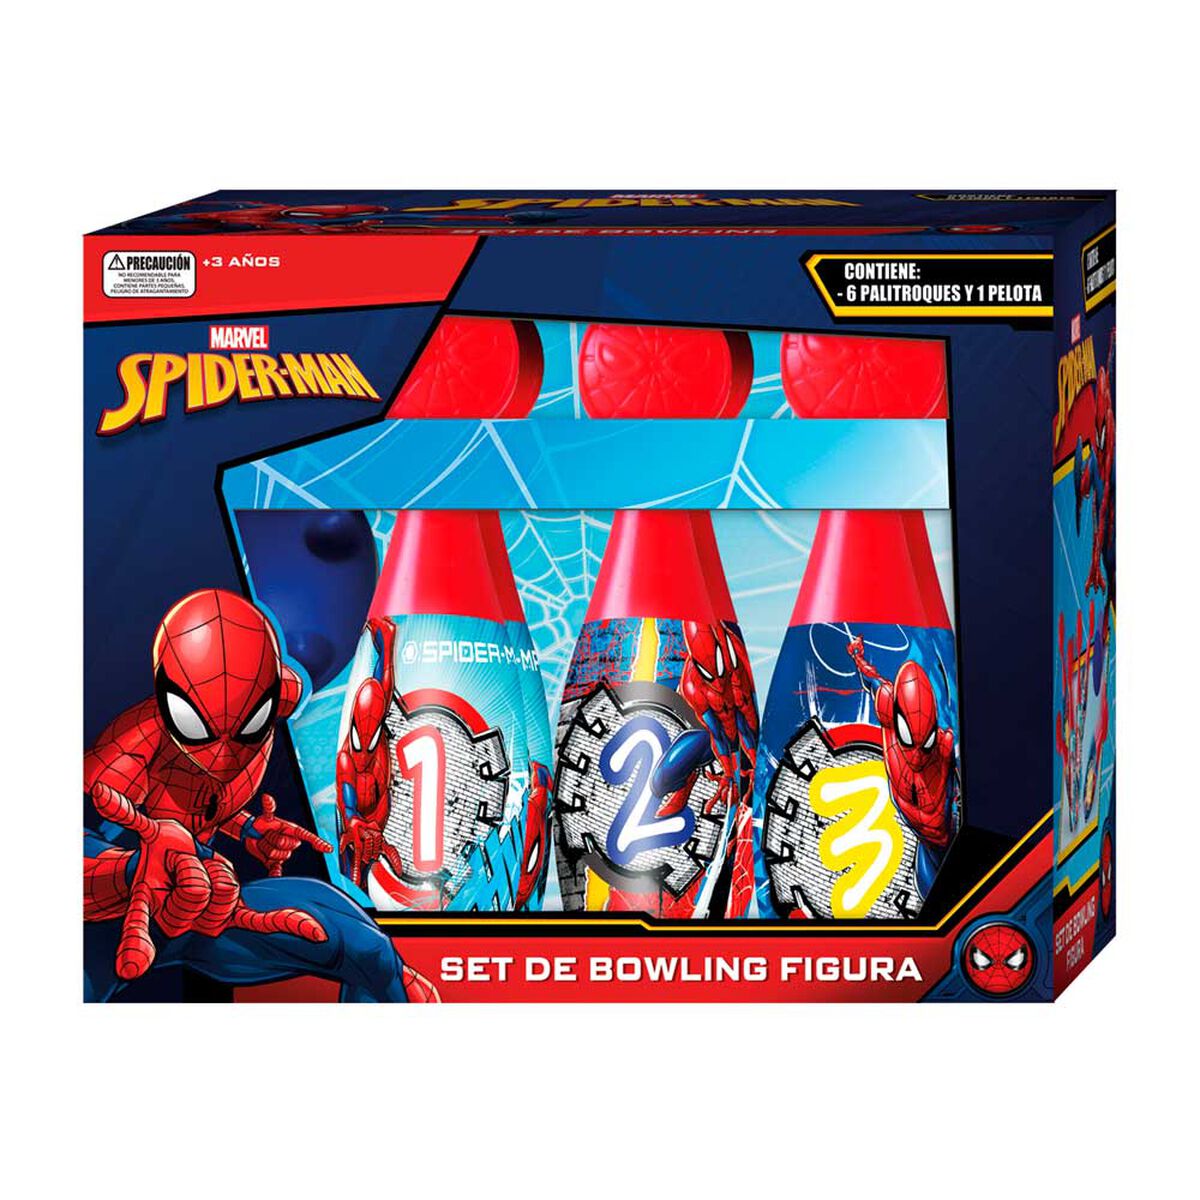 Set de Bowling Figura Spiderman